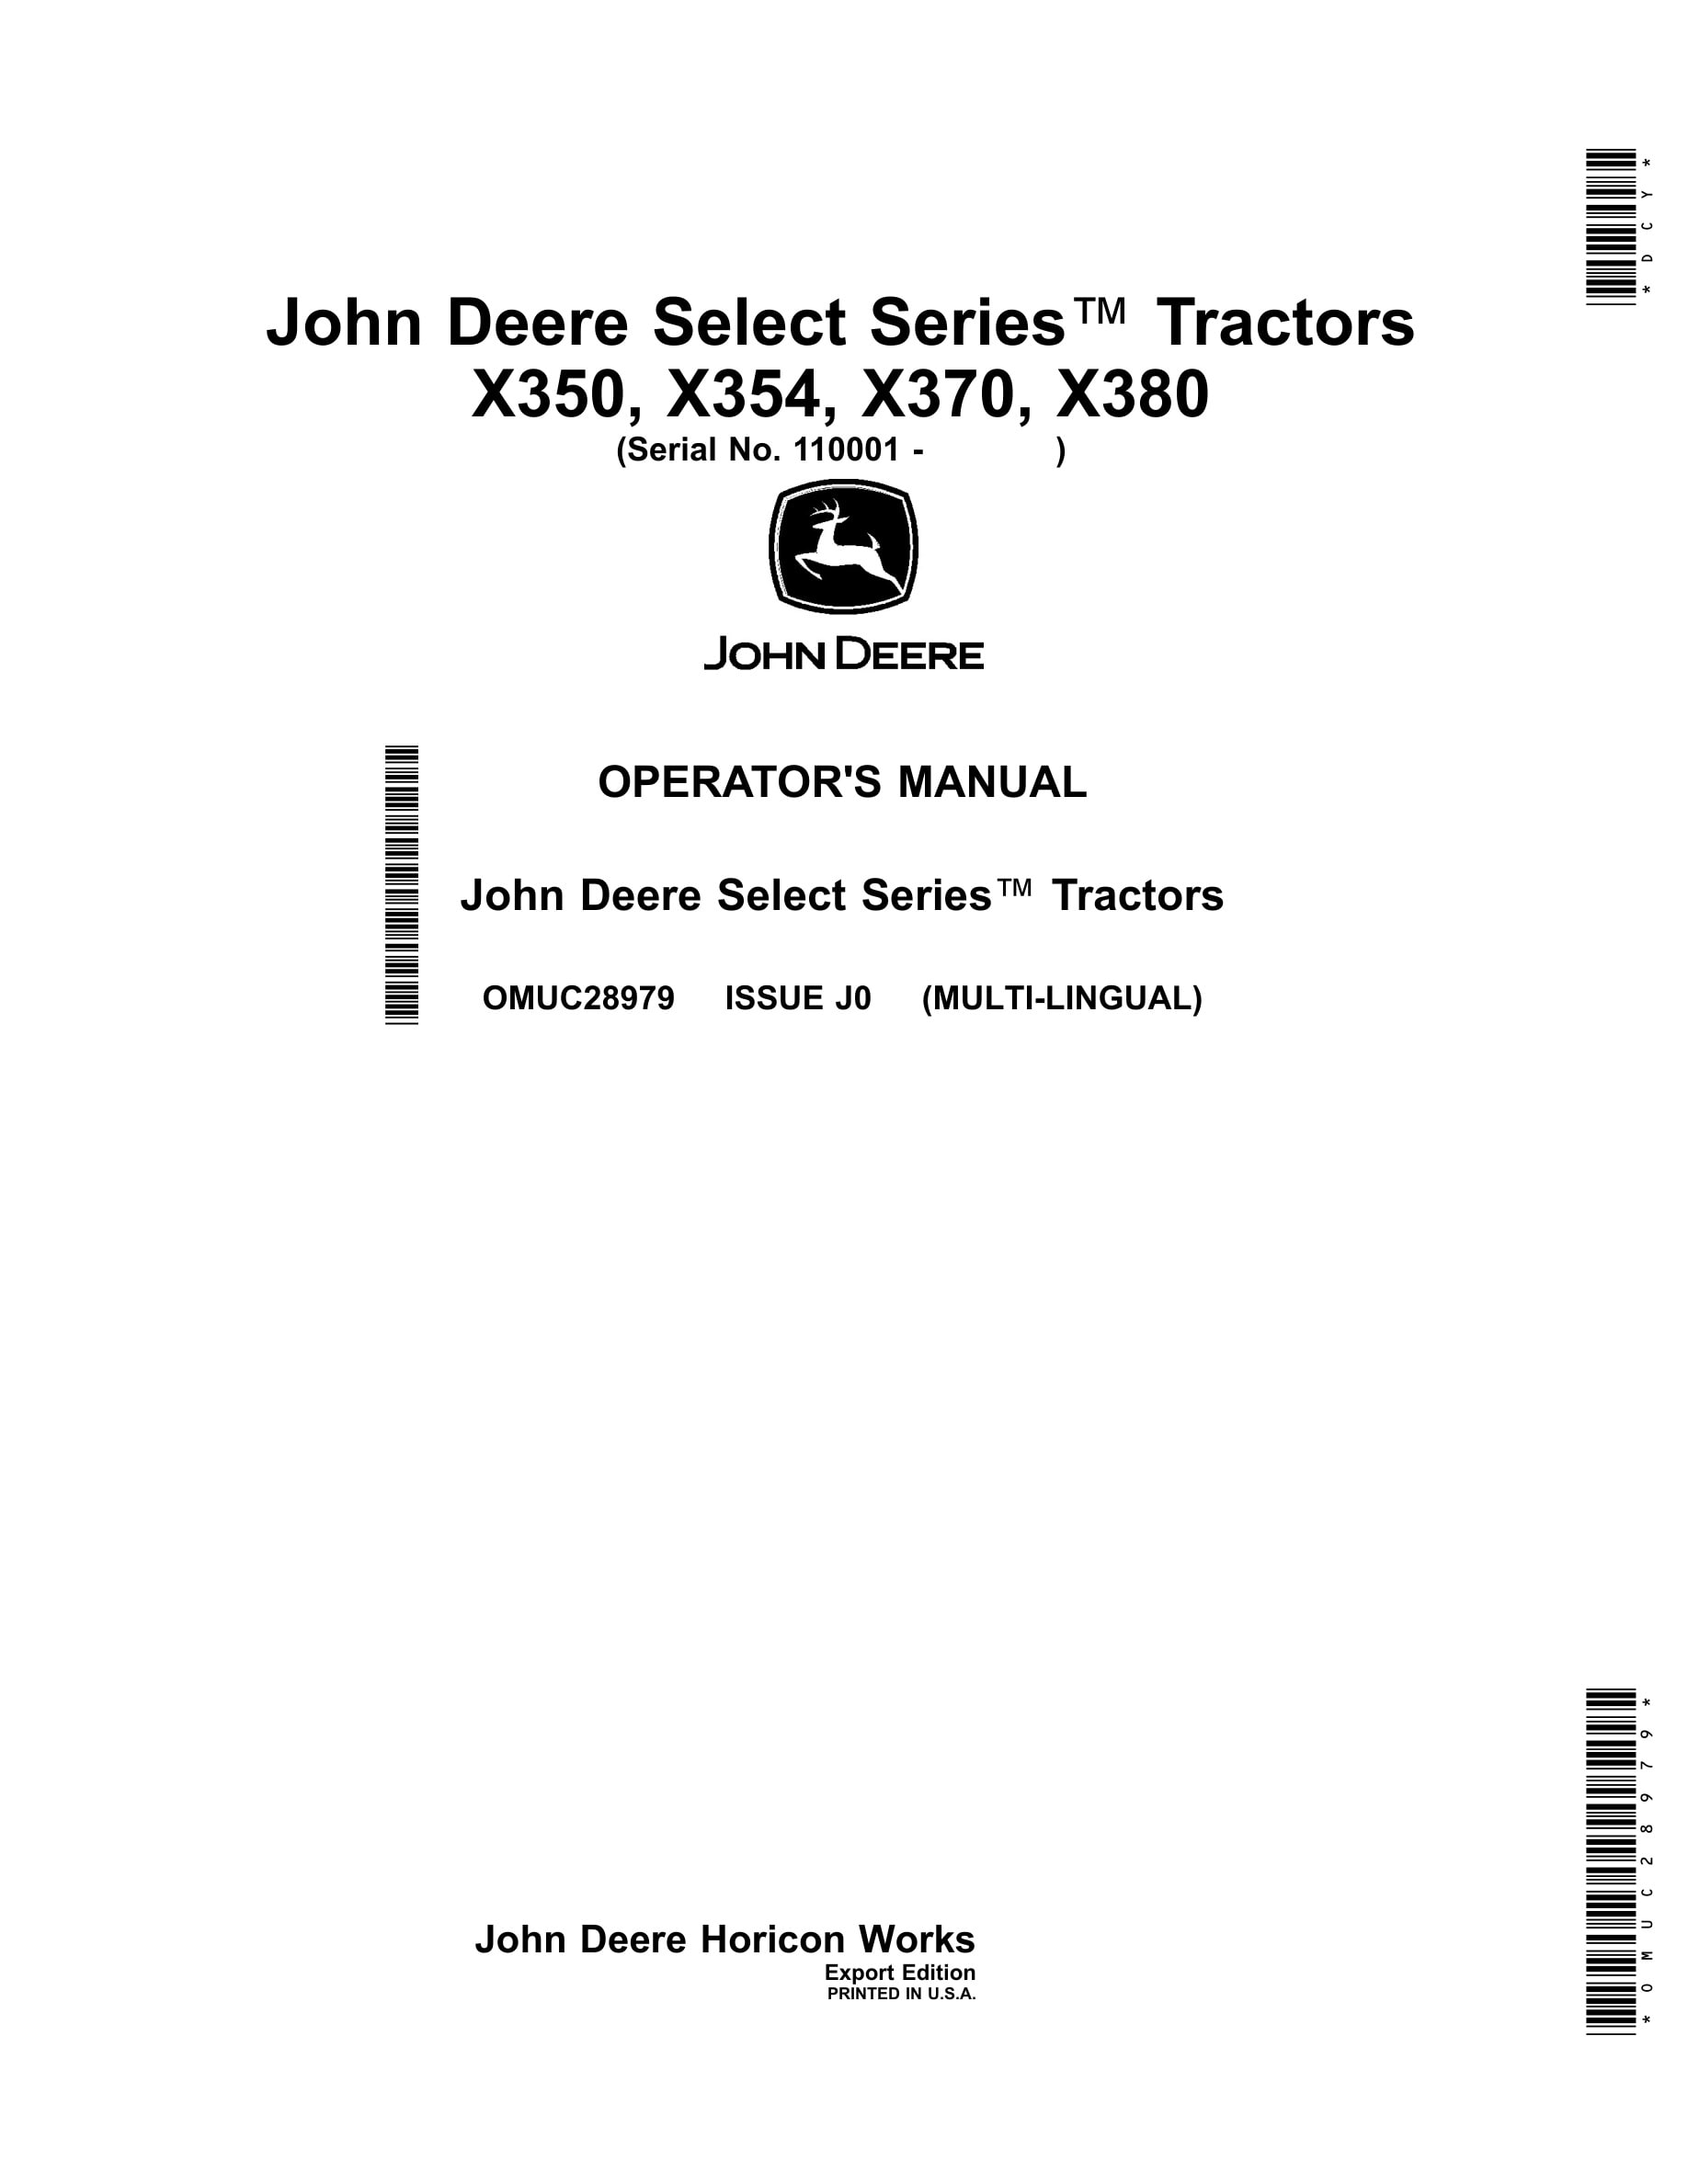 John Deere X350, X354, X370, X380 Tractors Operator Manuals OMUC28979-1